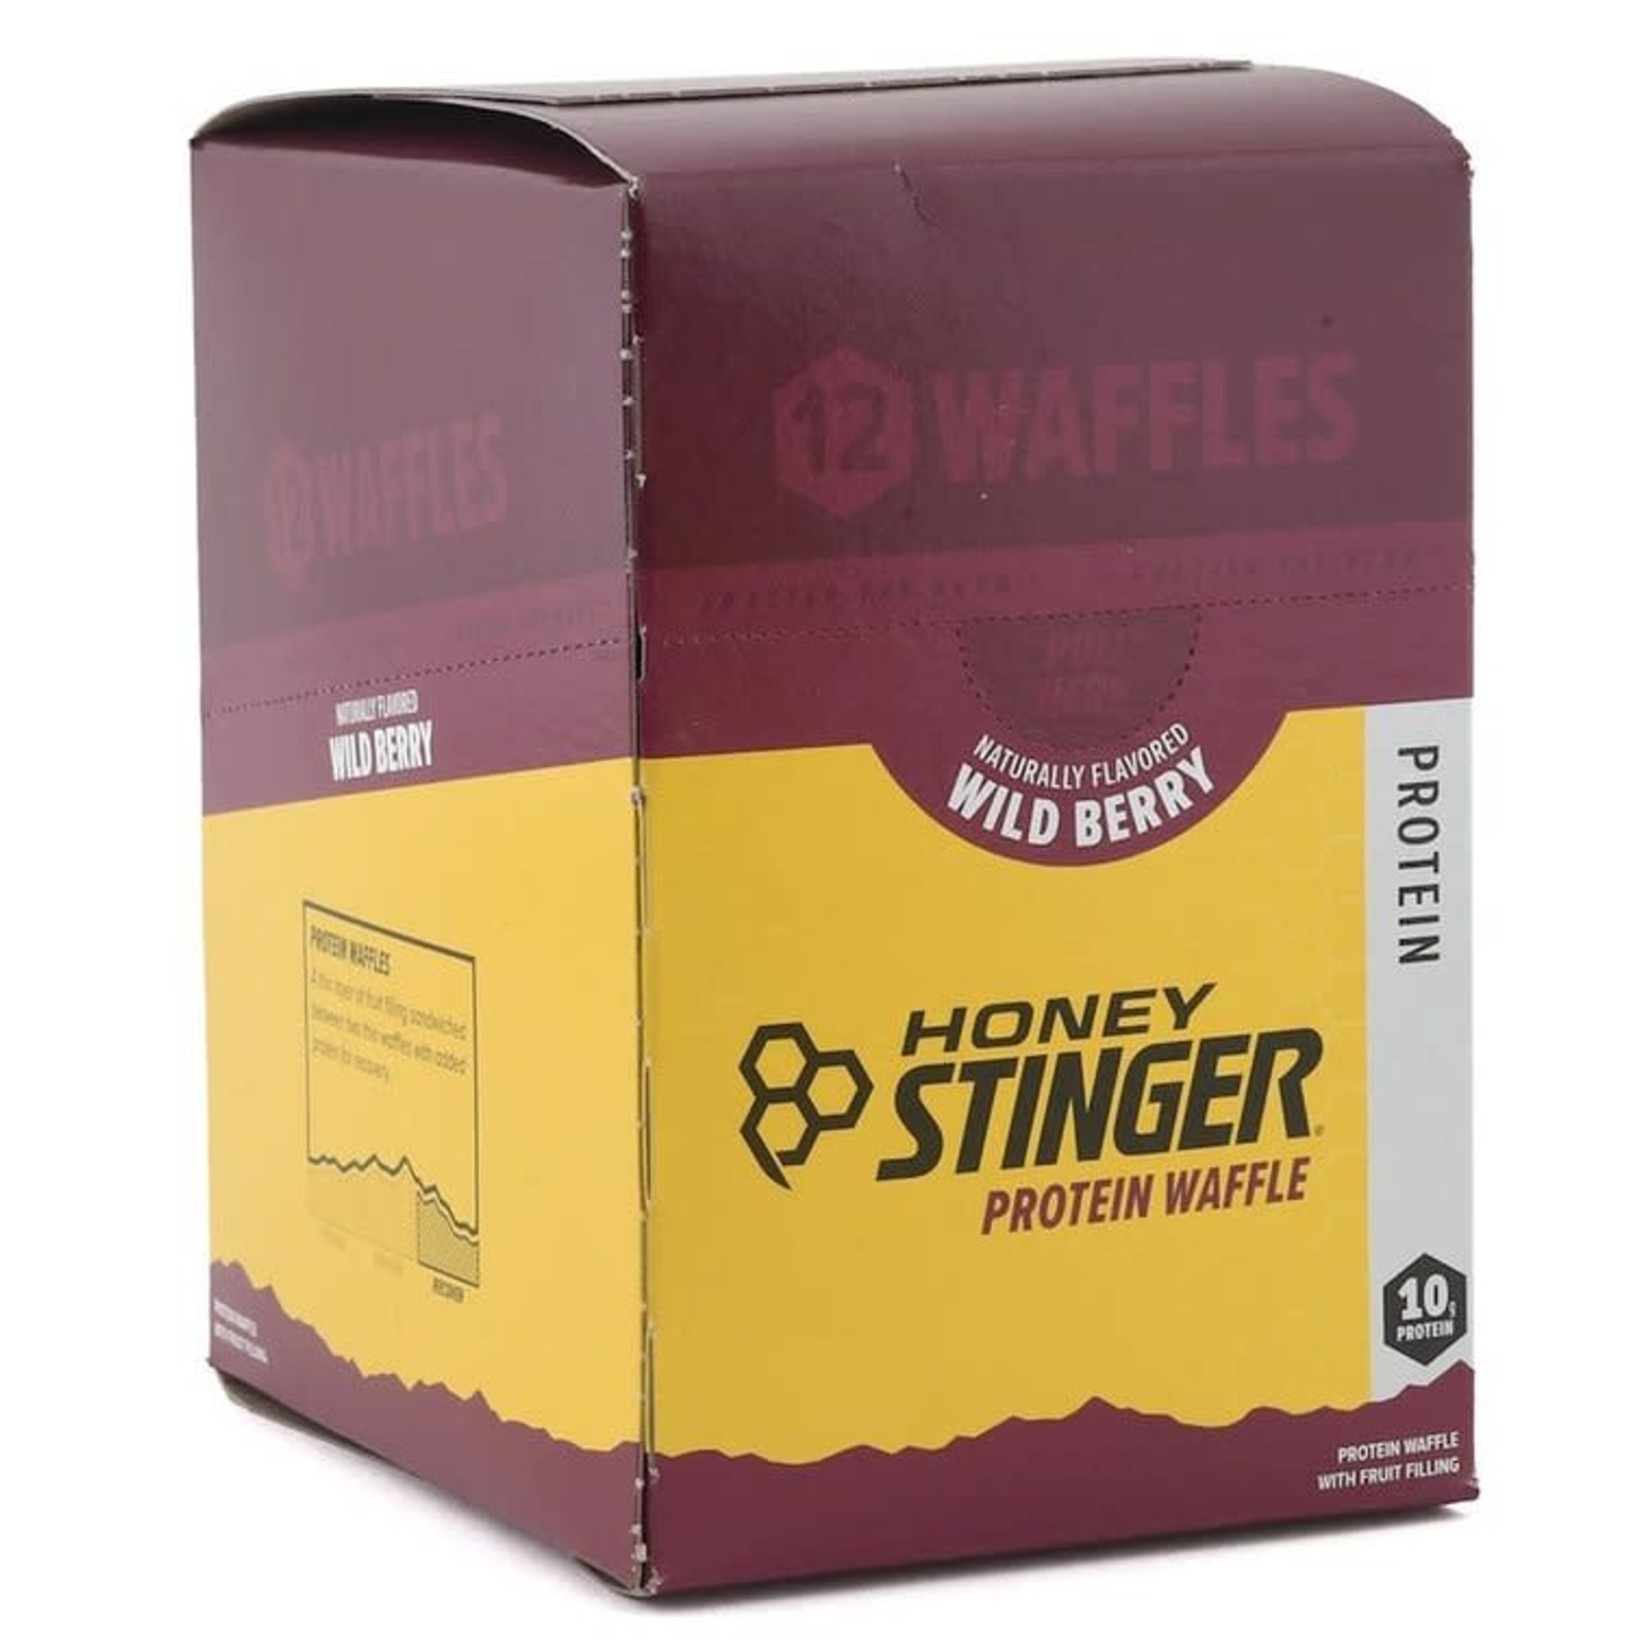 Honey Stinger Honey Stinger Protein Waffle: Wild Berry, Box of 12